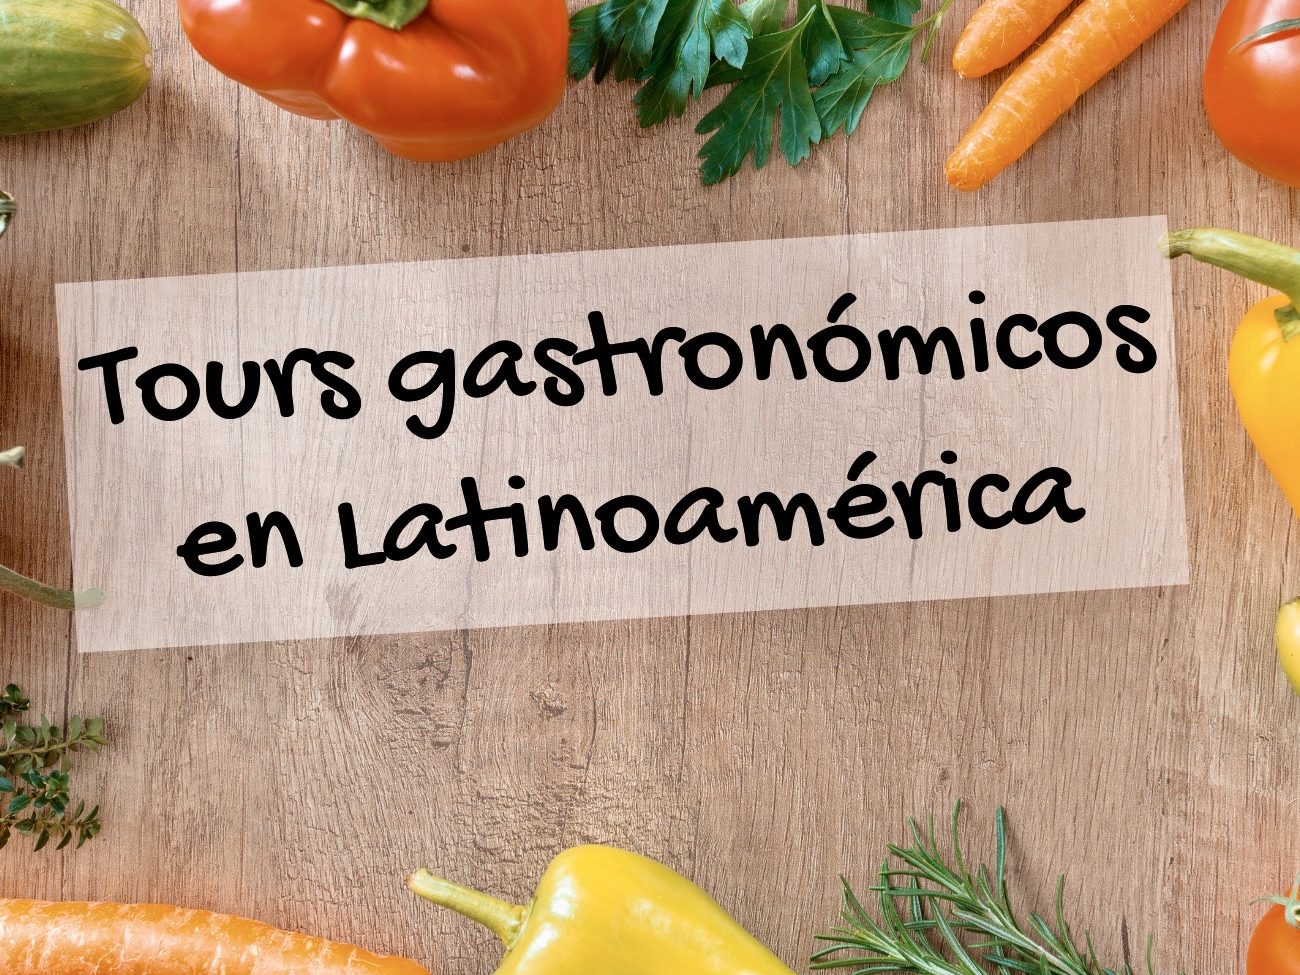 Tours gastronómicos en Latinoamérica.